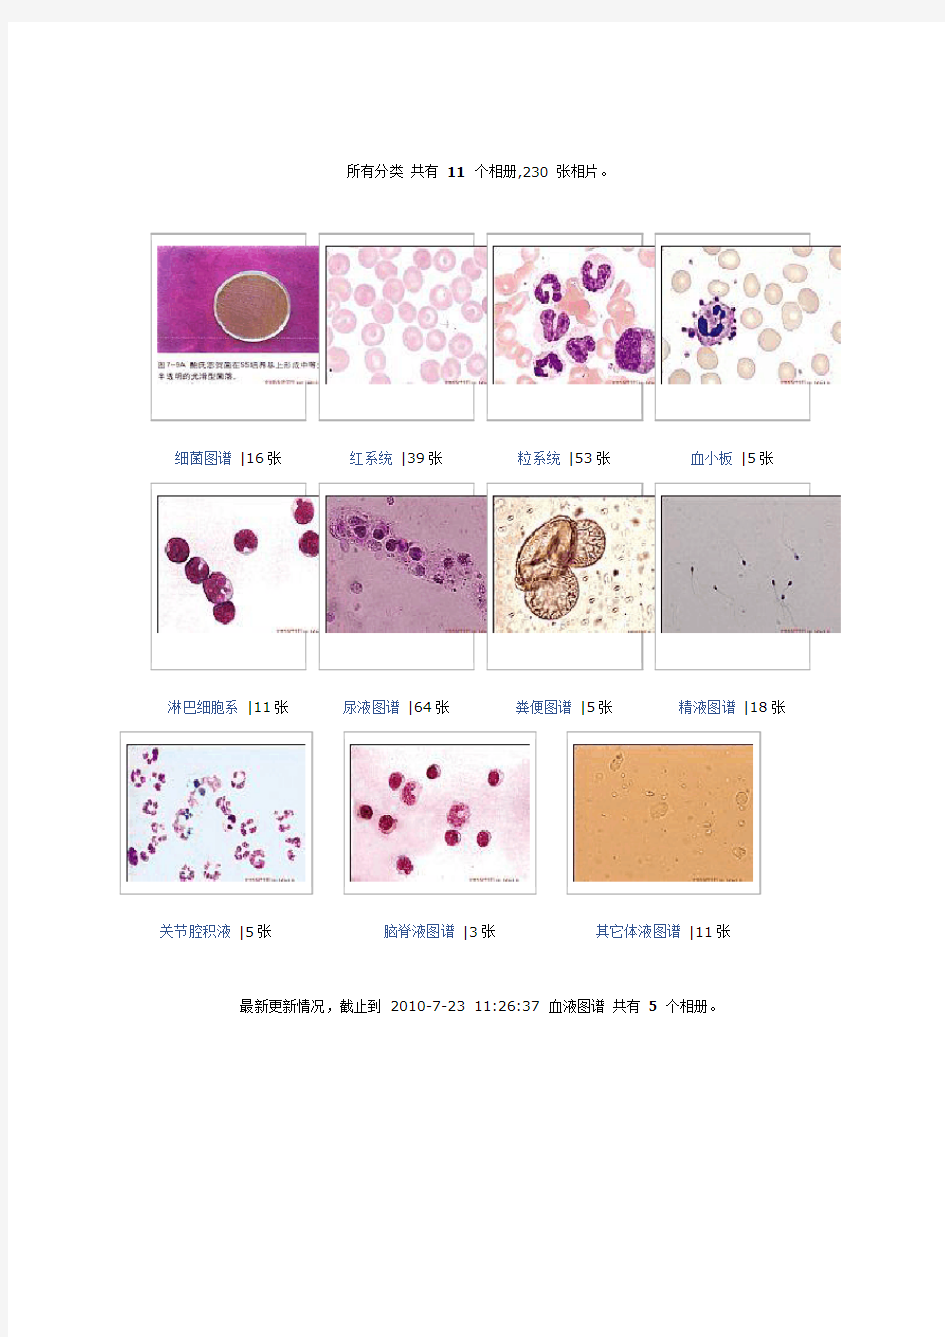 血液、体液细胞以及有形成分形态图谱